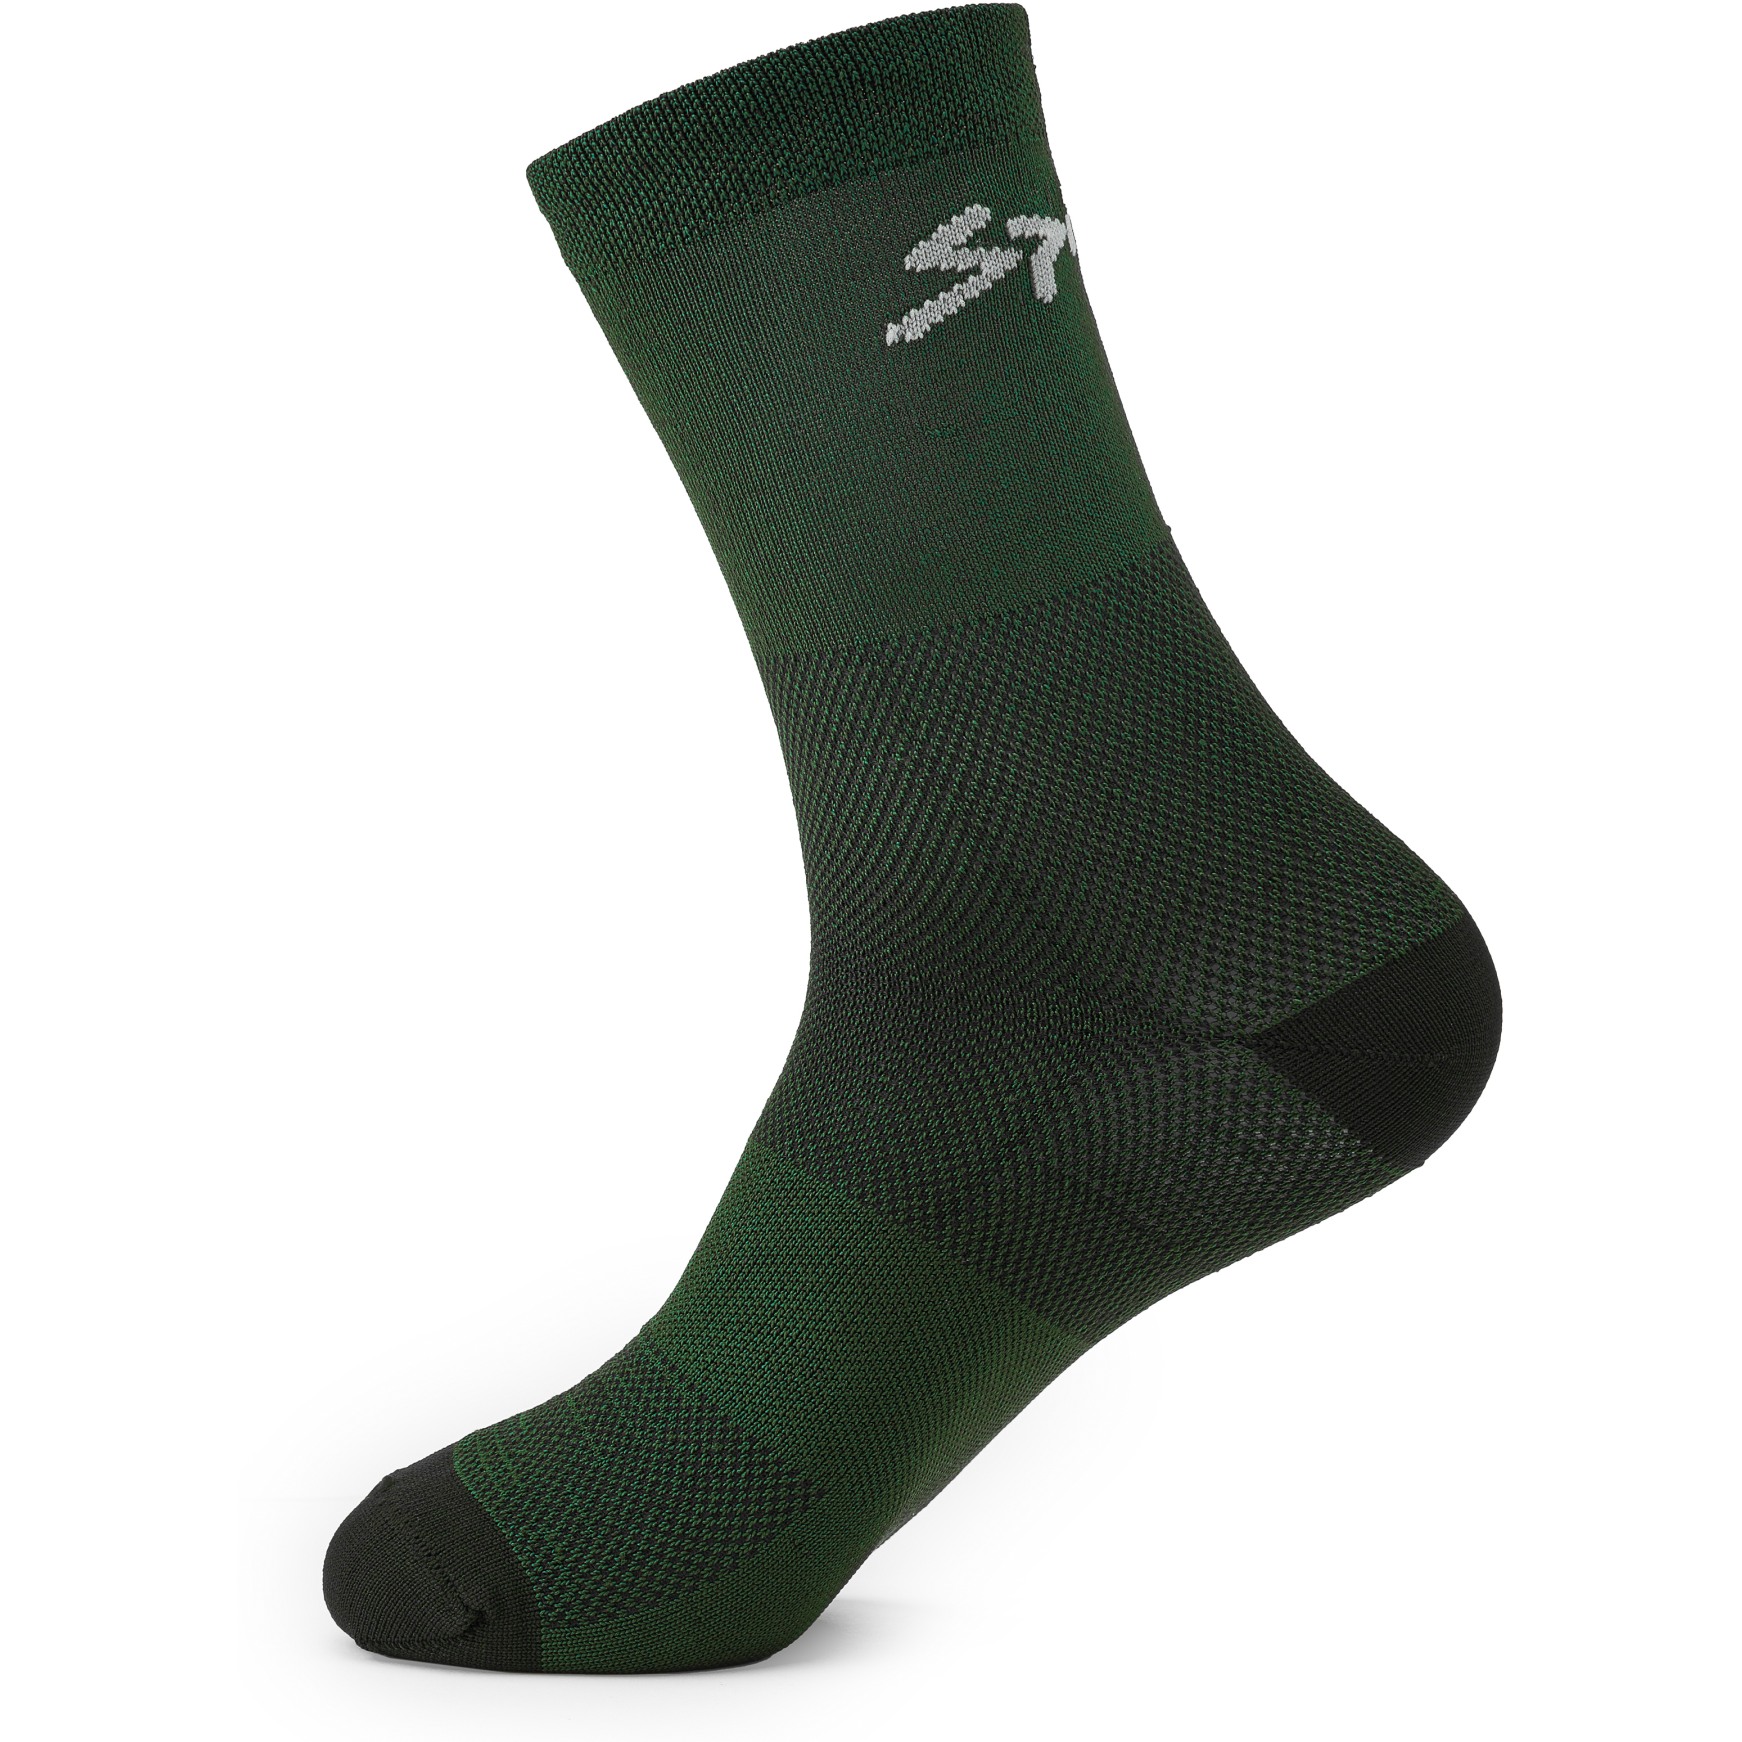 Produktbild von Spiuk ANATOMIC Socken 2er Pack - grün